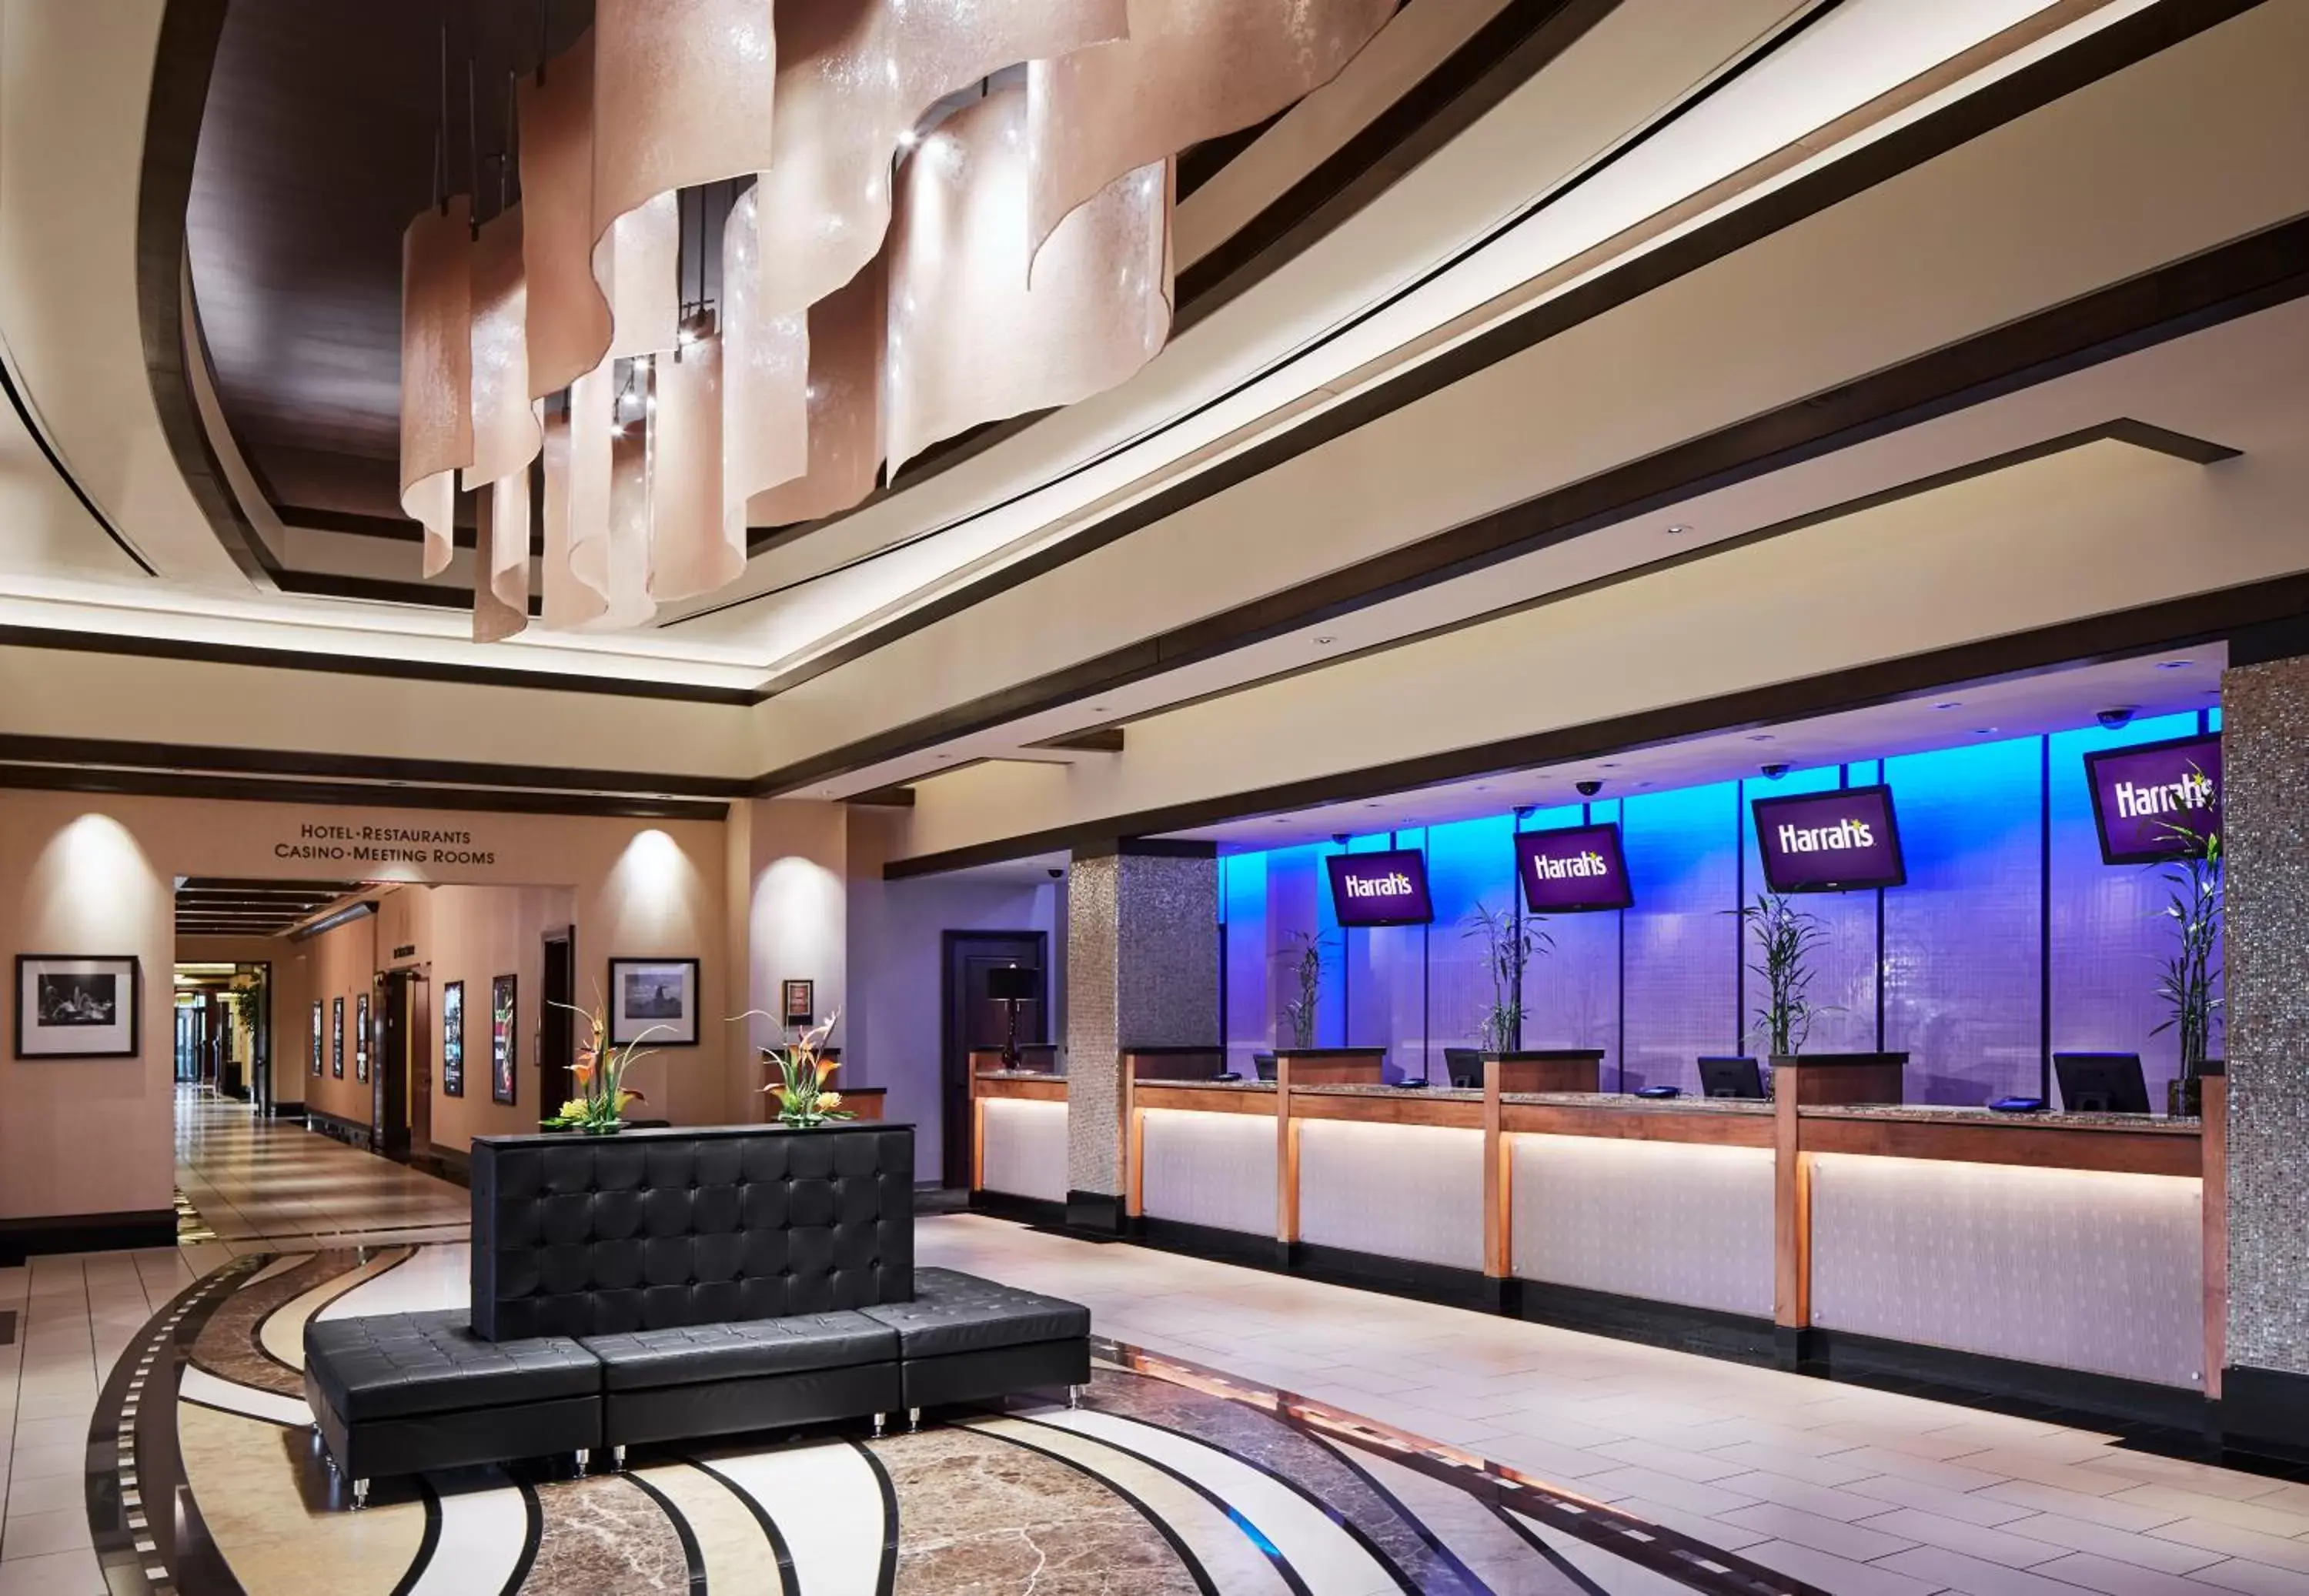 Lobby or reception, Lobby/Reception in Harrah's North Kansas City Hotel & Casino